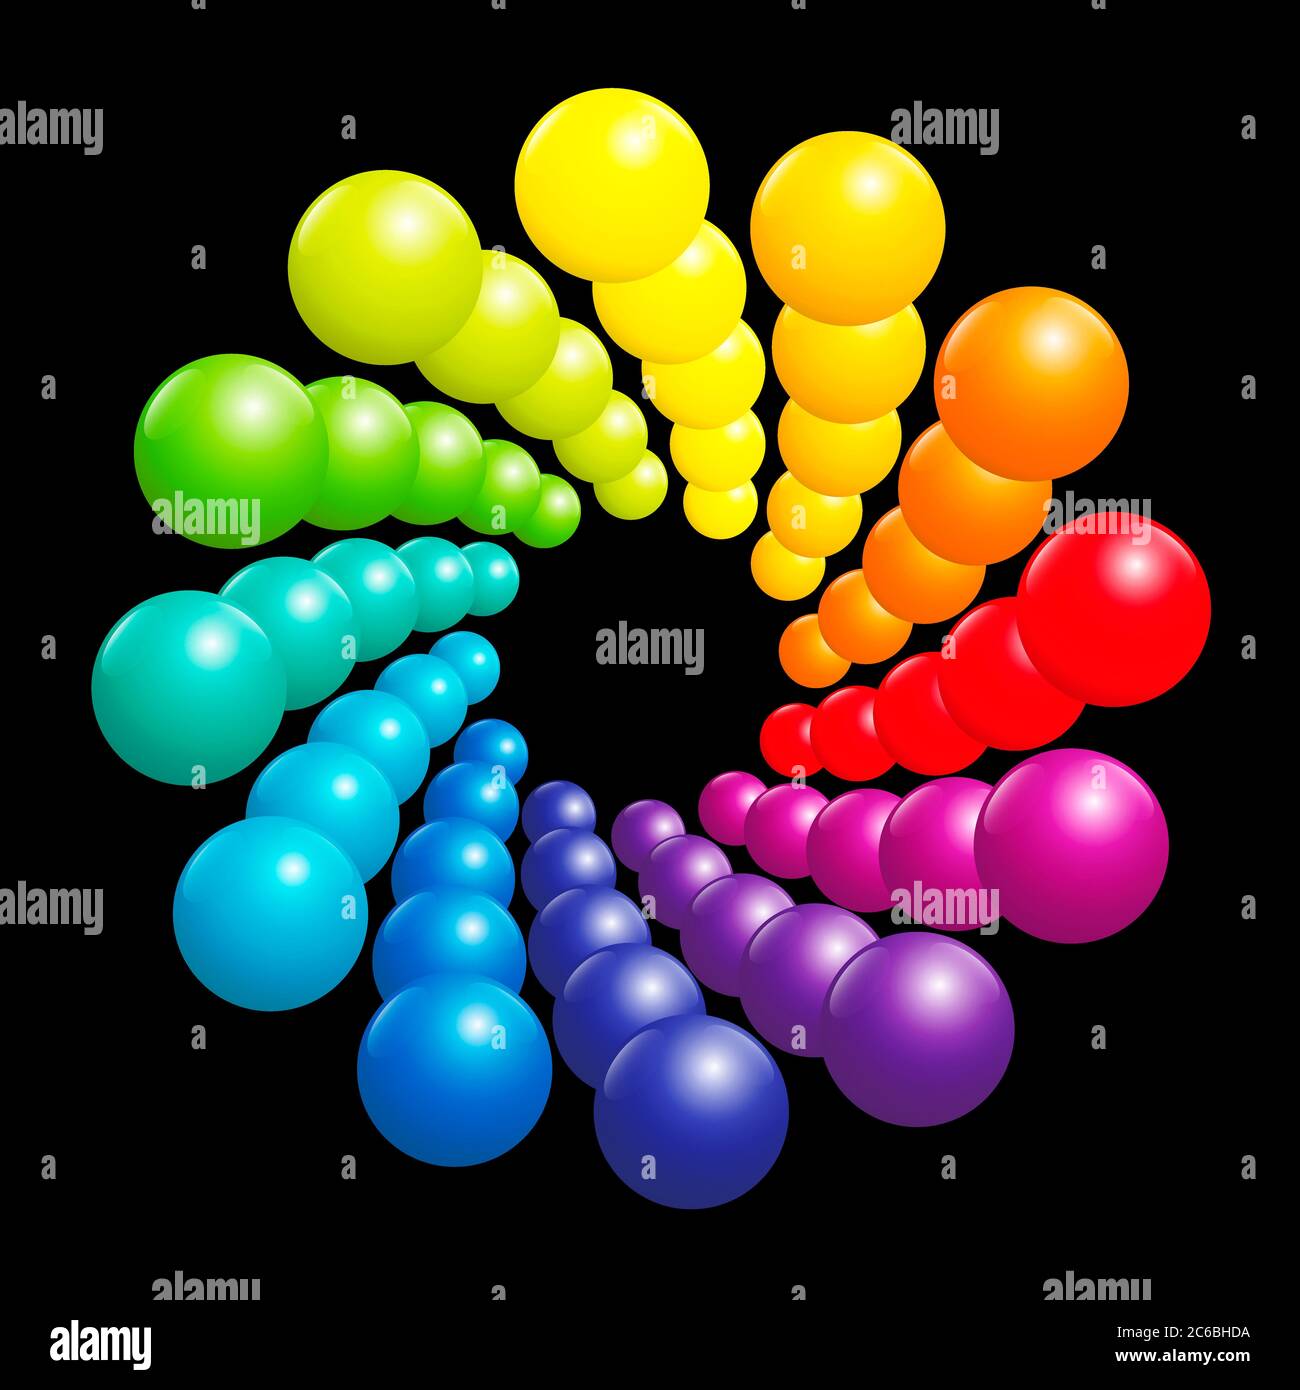 Motif en spirale coloré, spectre arc-en-ciel très brillant formé par de nombreuses boules de couleur tridimensionnelles - illustration sur fond noir. Banque D'Images